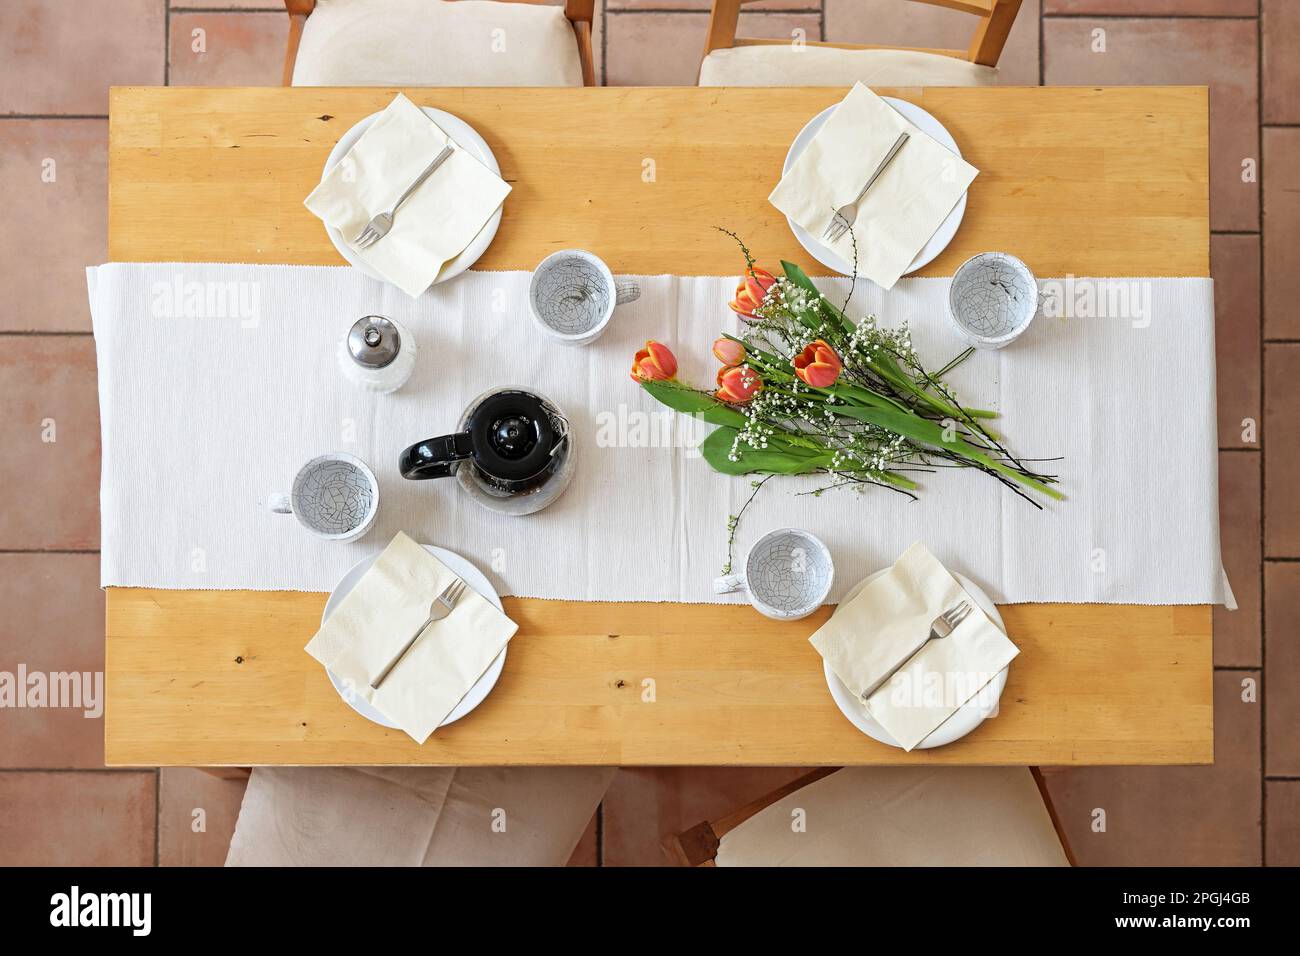 Préparation pour une pause-café de l'après-midi avec quatre assiettes, tasses, serviettes, cafetière et fleurs de tulipe sur une table blanche sur une table en bois, Top vie Banque D'Images